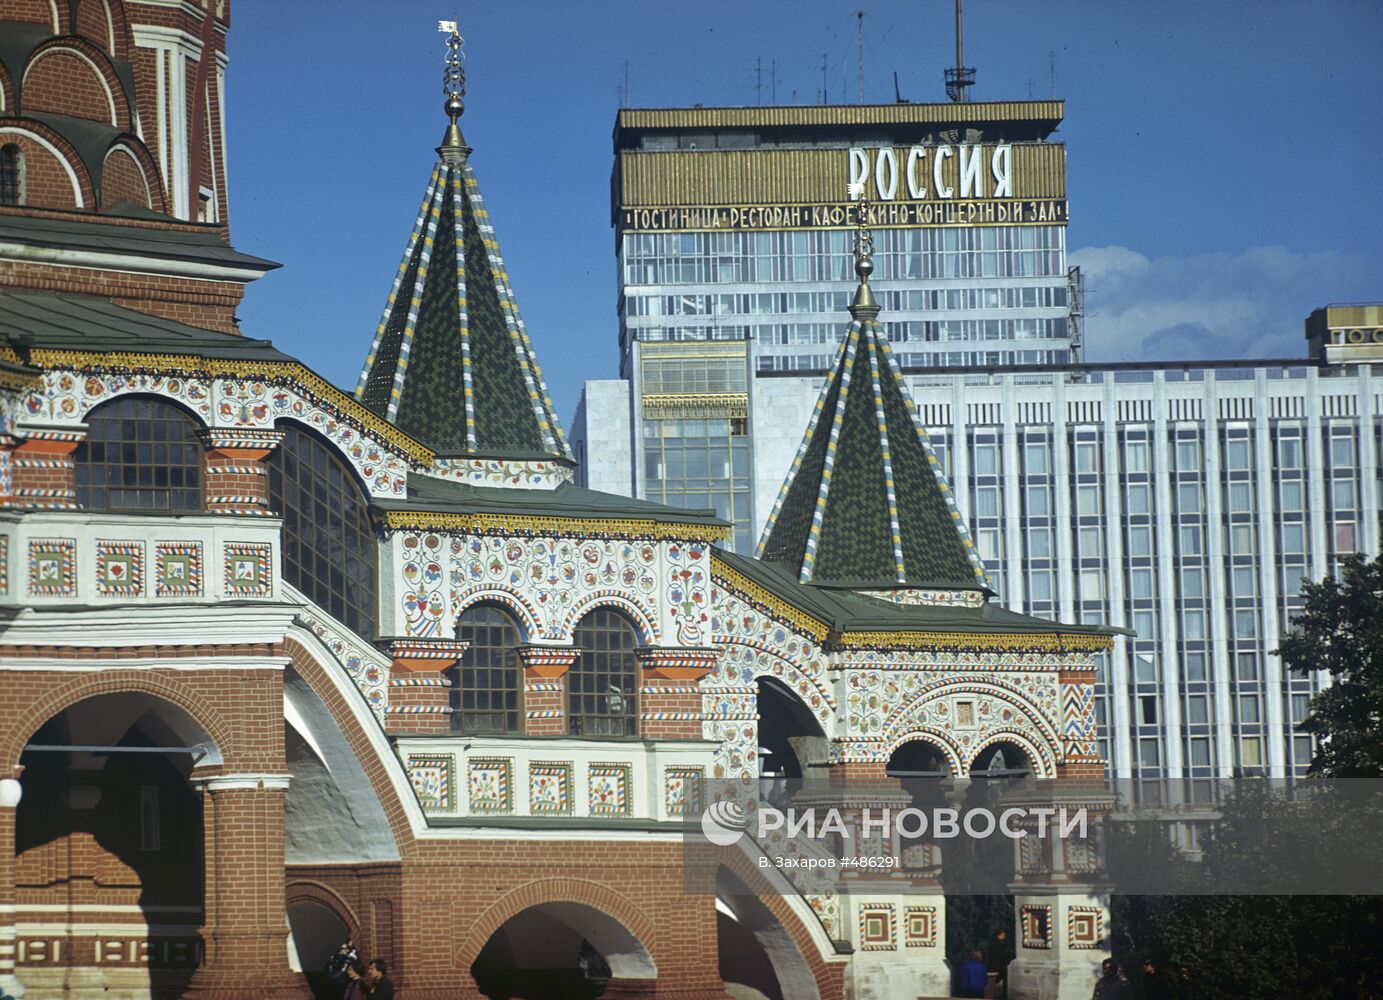 Южное крыло храма Василия Блаженного и фасад гостиницы "Россия"